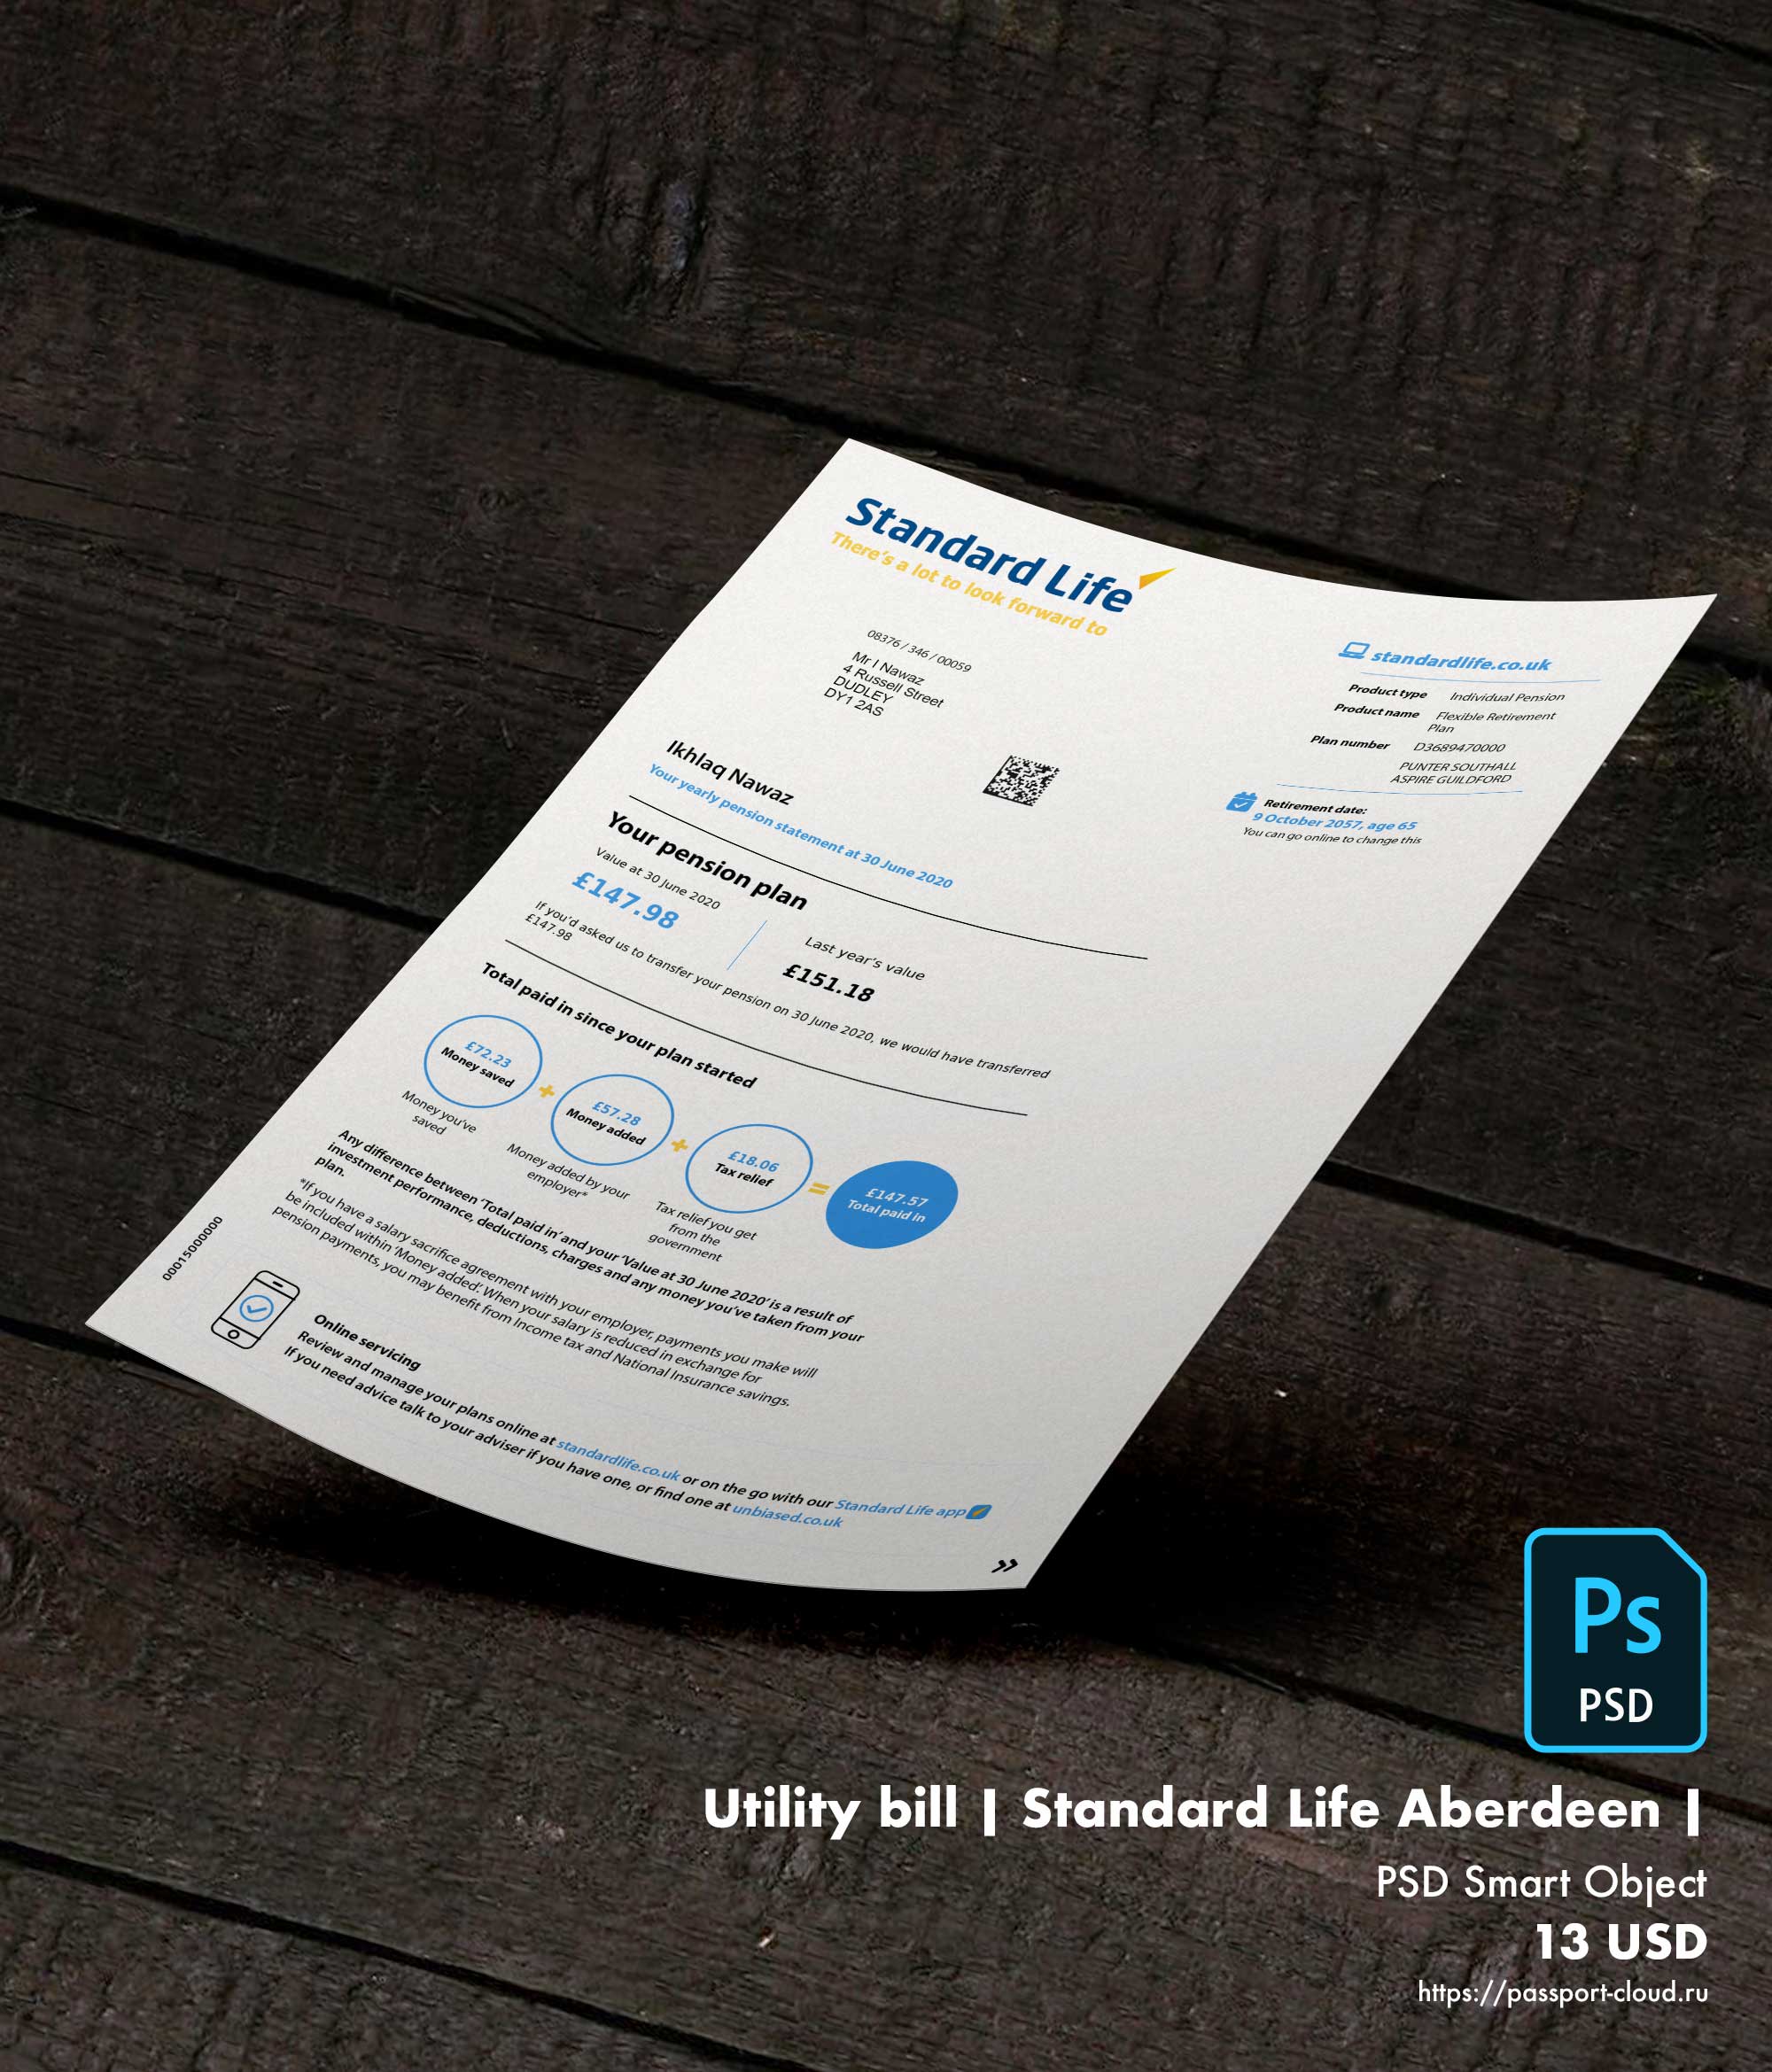 Utility bill | Standard Life Aberdeen | UK |1